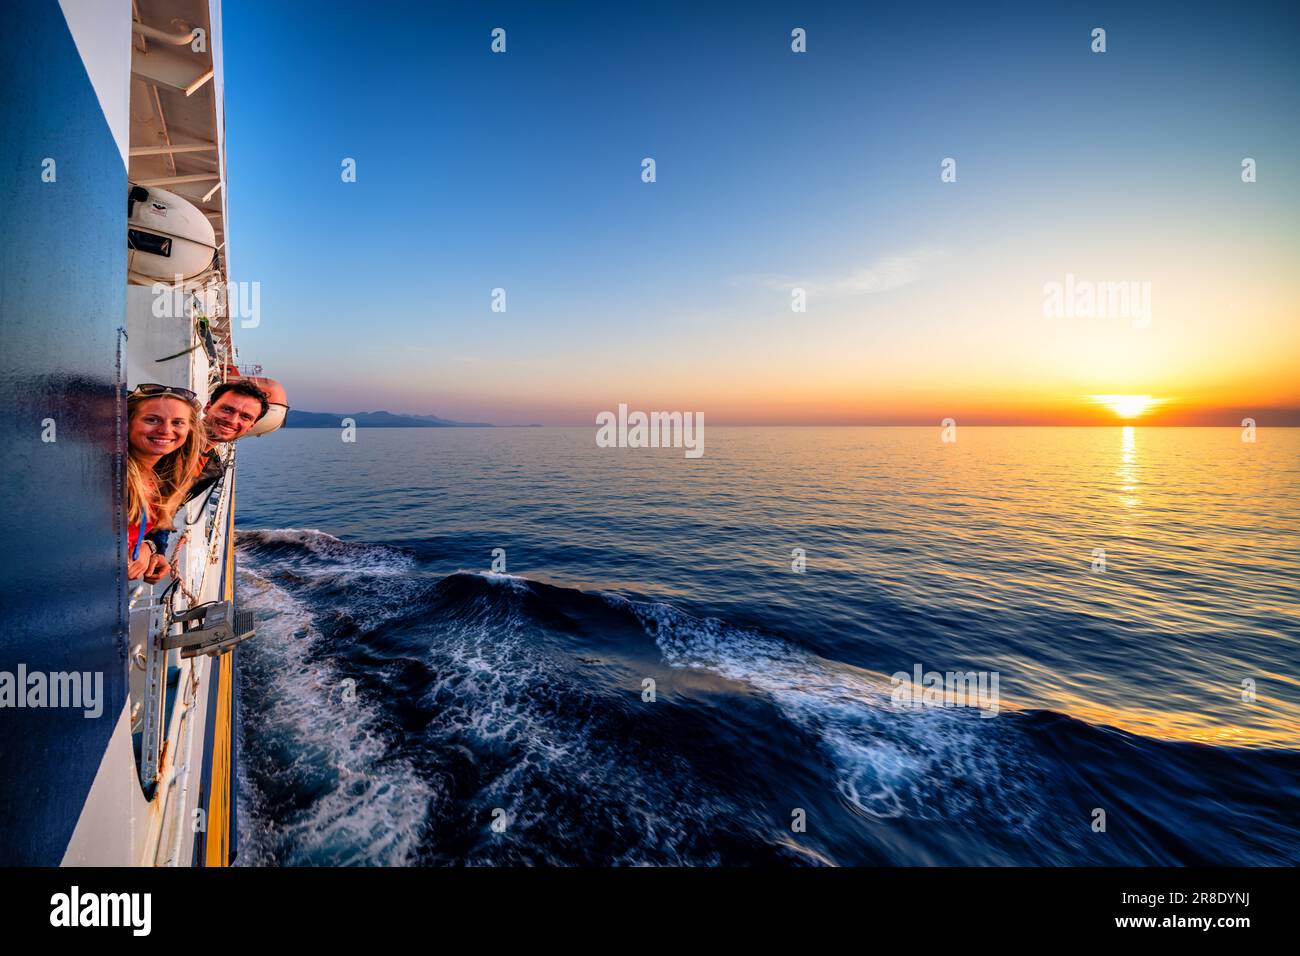 Coucher de soleil au navire Corsica Ferries, presque à la ville de L'Île-Rousse, île Corse, France Banque D'Images